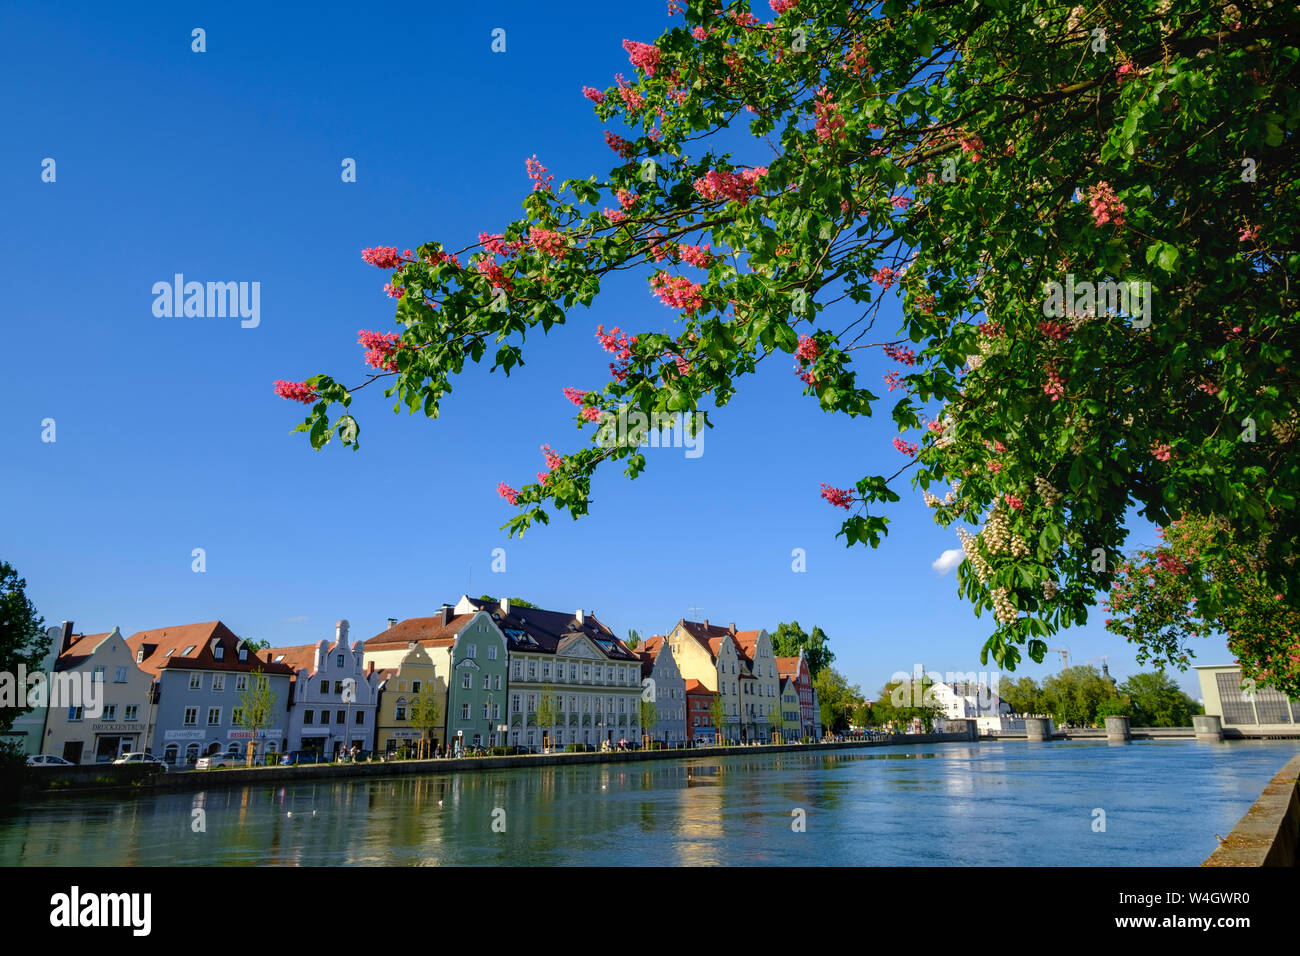 Blühenden Kastanienbaum, Blick Richtung Mühle Insel, Isar, Landshut, Bayern, Deutschland Stockfoto